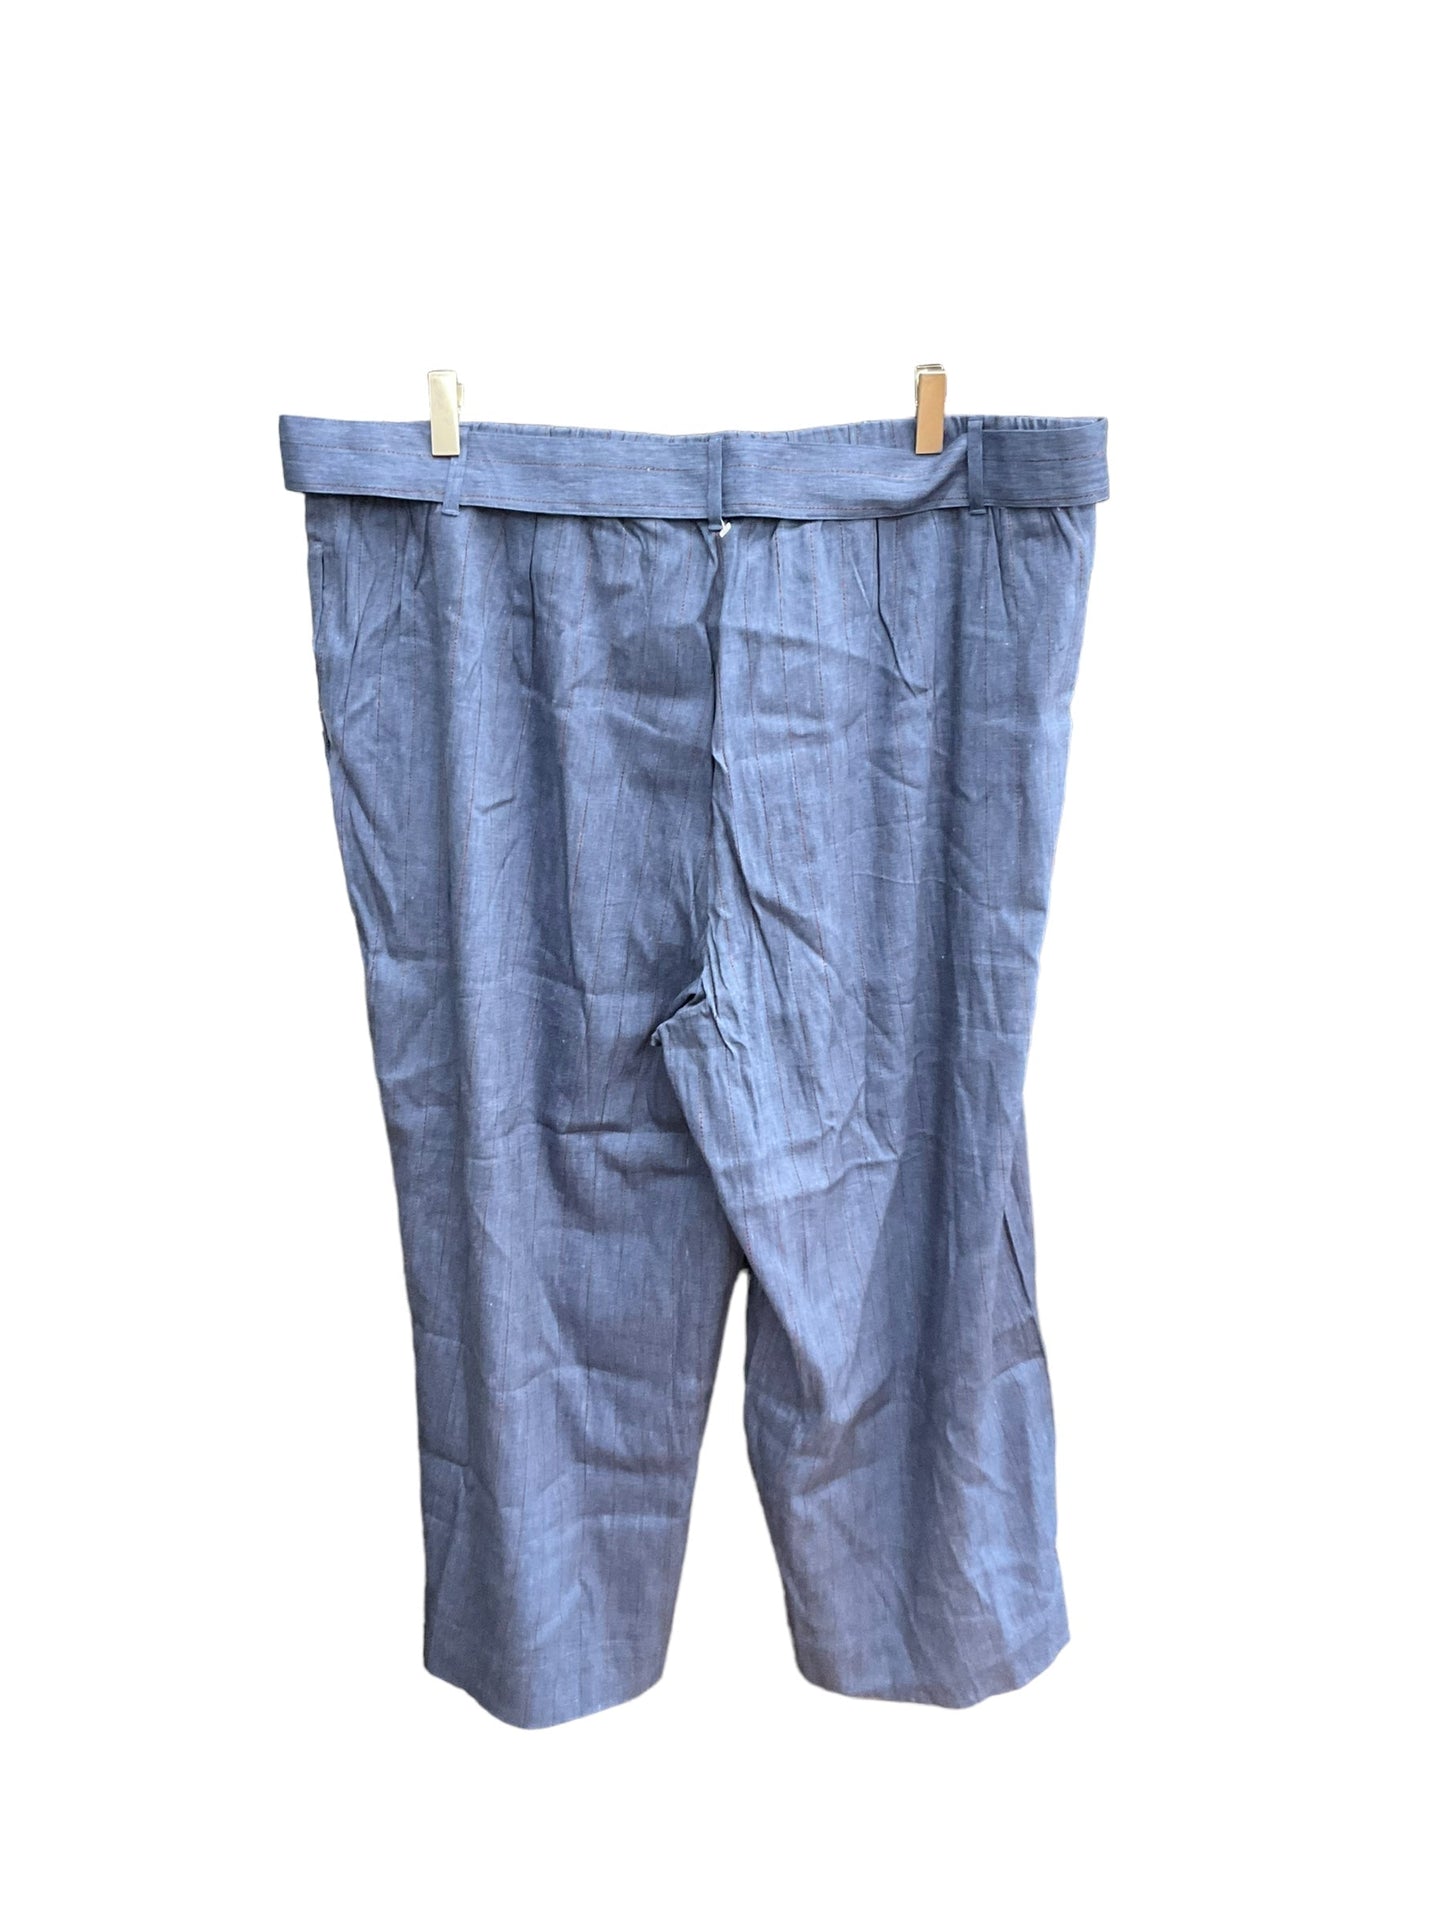 Blue Pants Cropped J. Jill, Size 18